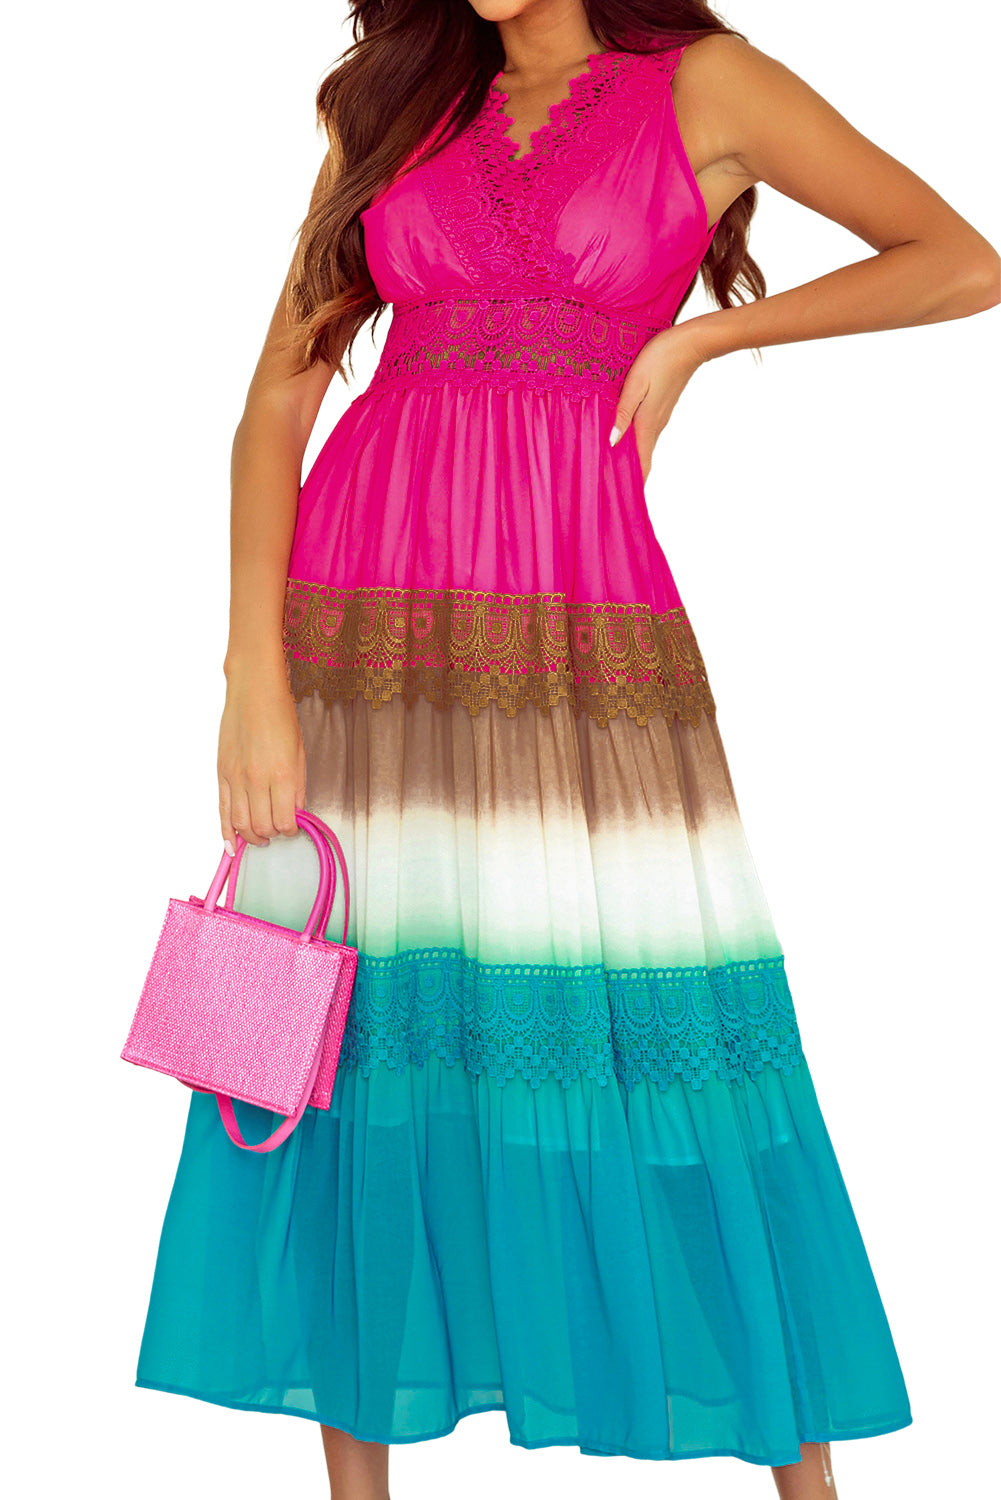 Langes Kleid mit mehrfarbigen Spitzennähten und Farbverlauf in Regenbogenfarben